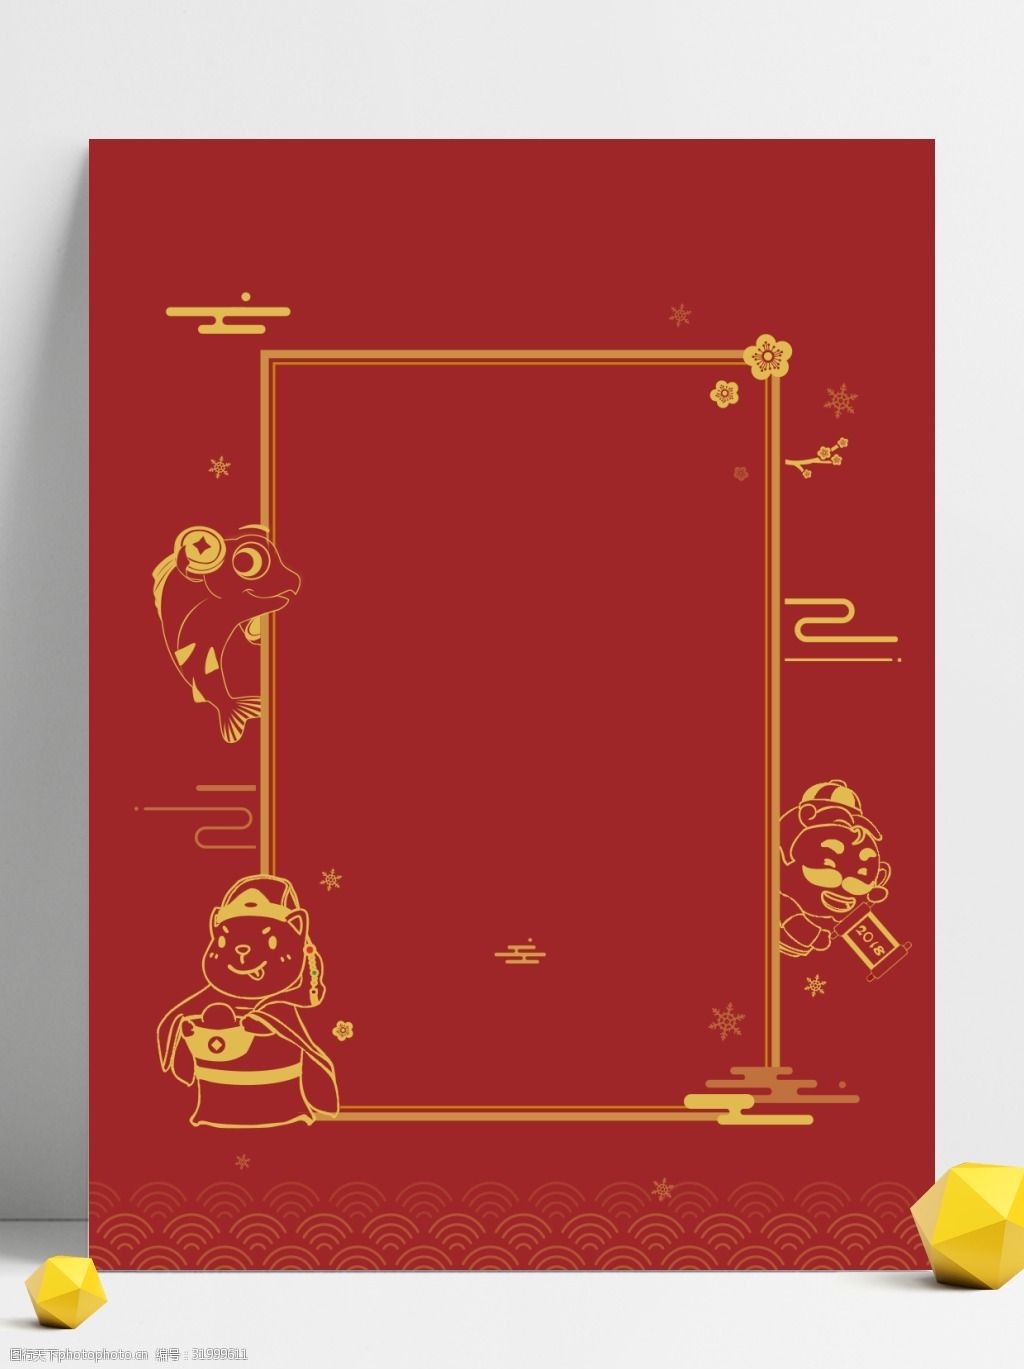 关键词:手绘红色金色过年广告背景psd 边框 金线 新年 元宝 财神 手绘